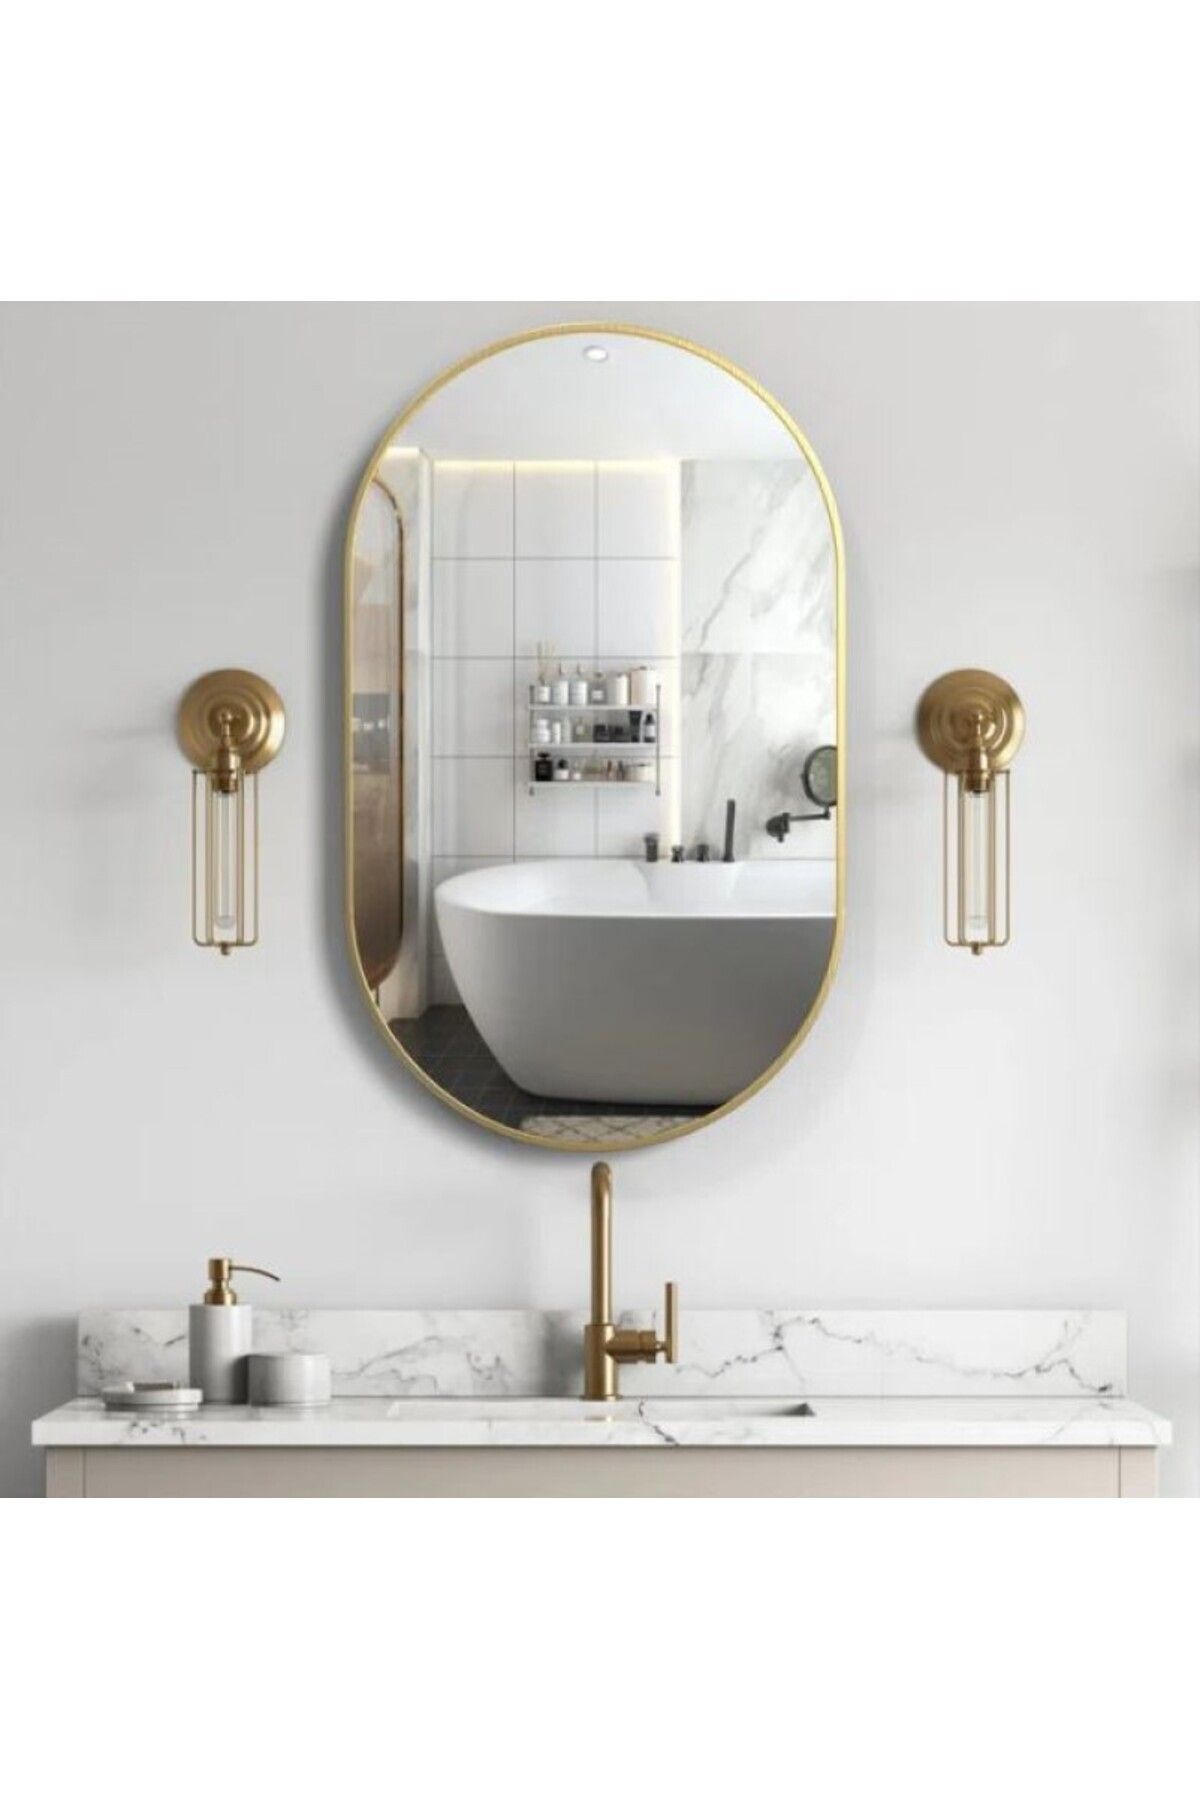 CG HOME Model Alfa Dekoratif Ayna Duvar Aynası Konsol Aynası Mdf Elips Ayna